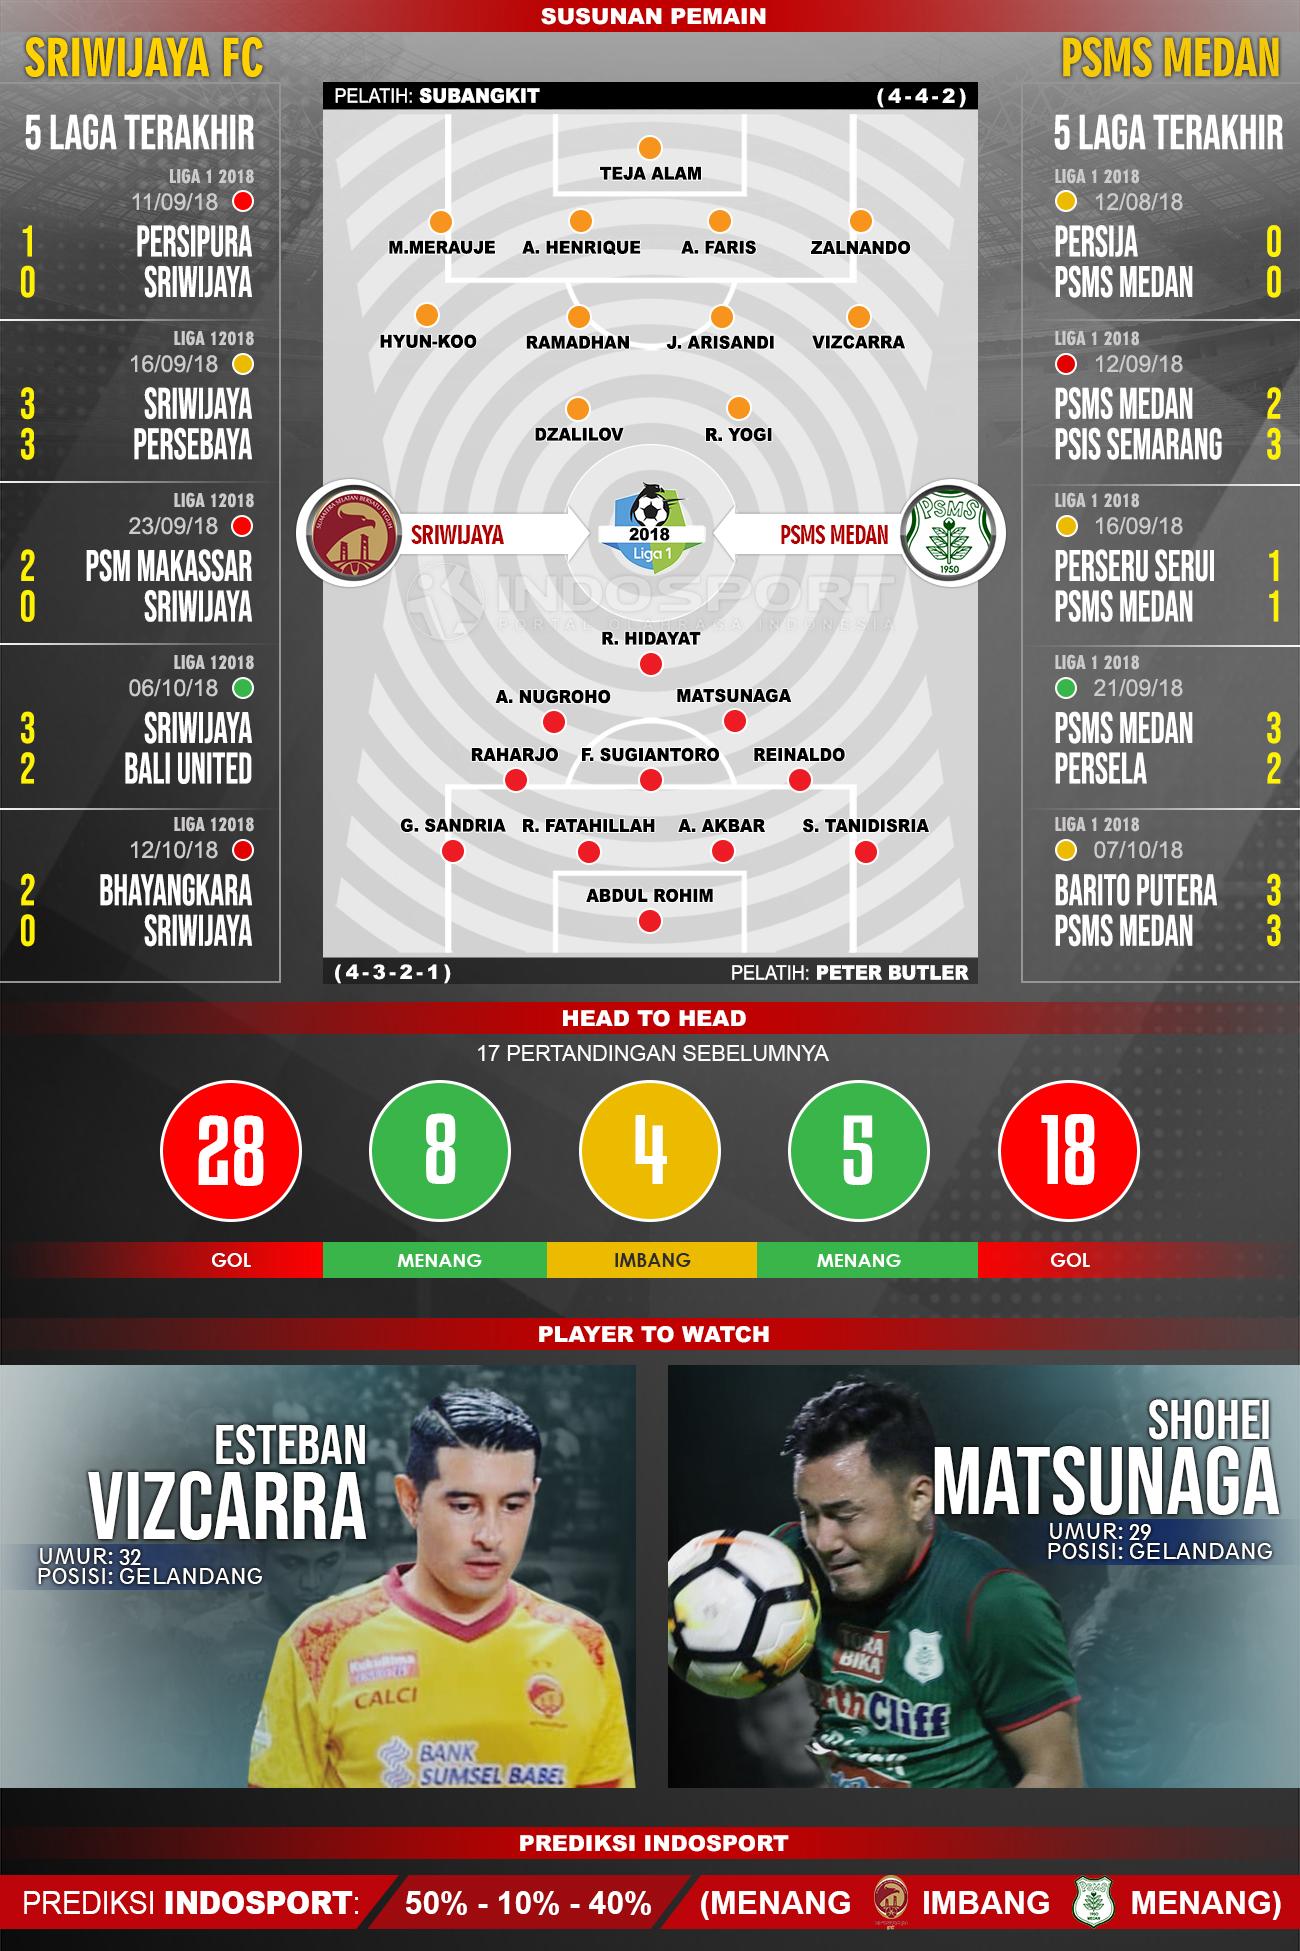 Sriwijaya FC vs PSMS Medan (Susunan Pemain - Lima Laga Terakhir - Player to Watch - Prediksi Indosport) Copyright: INDOSPORT